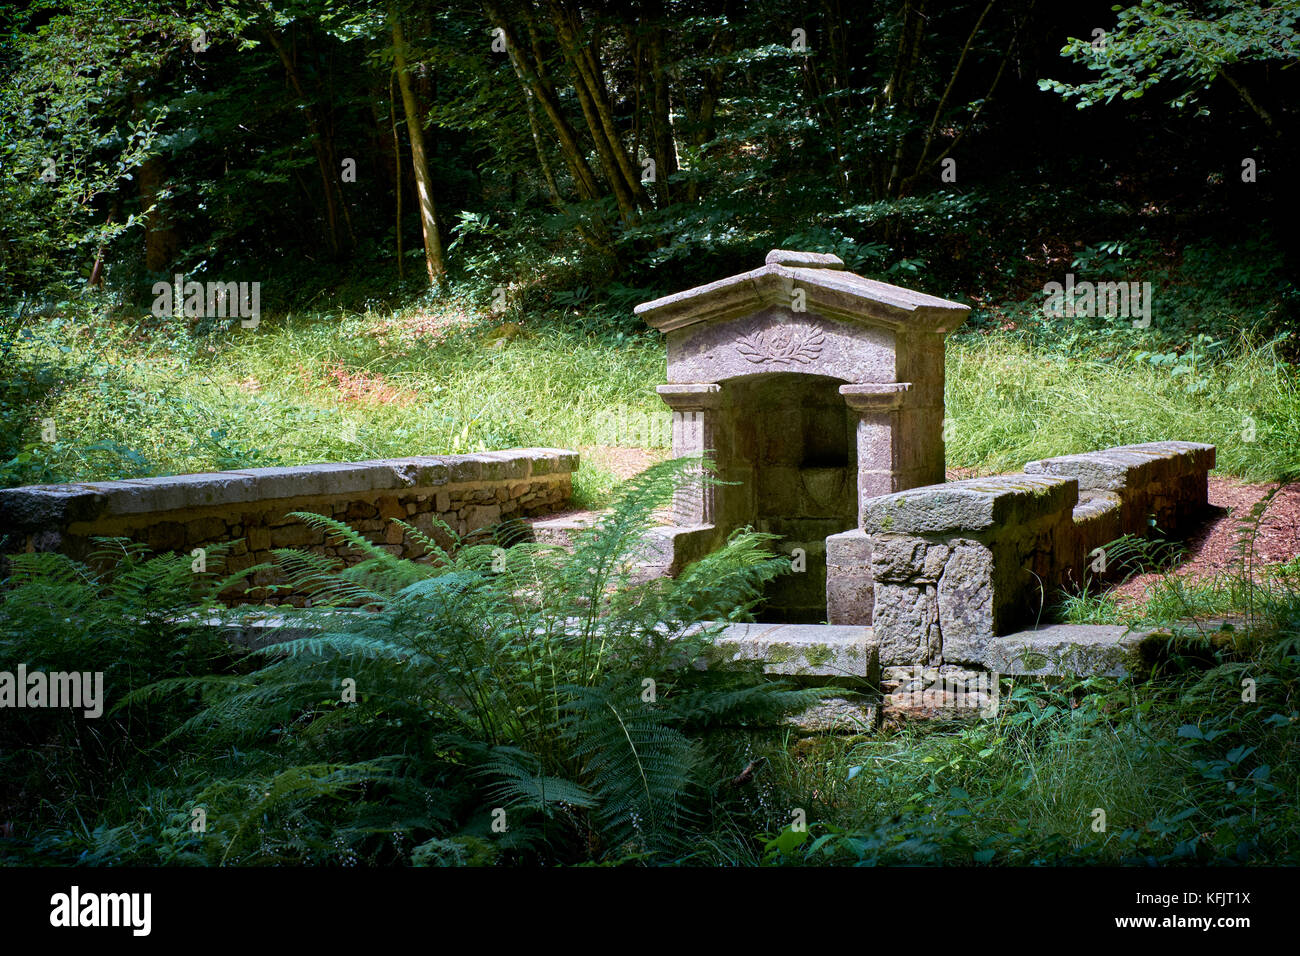 Une source d'eau potable romaine dans une glade boisée dans le pays Bigouden près de la rivière Odet Finistère Bretagne France. Banque D'Images